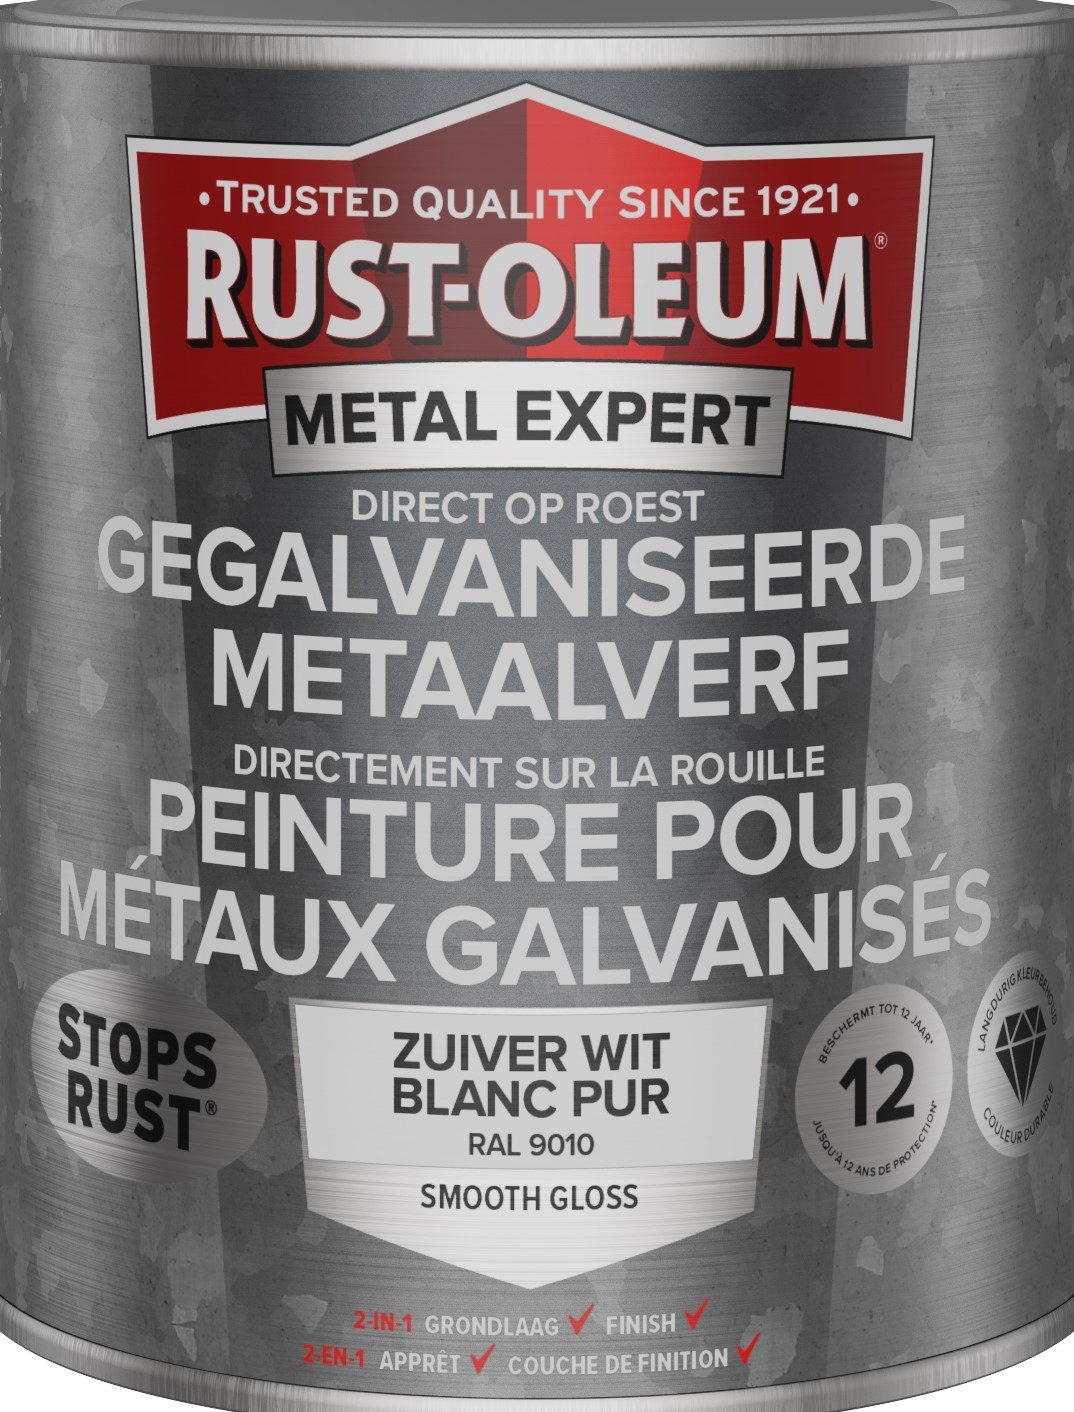 rust-oleum metal expert gegalvaniseerde metaalverf ral 9010 0.75 ltr